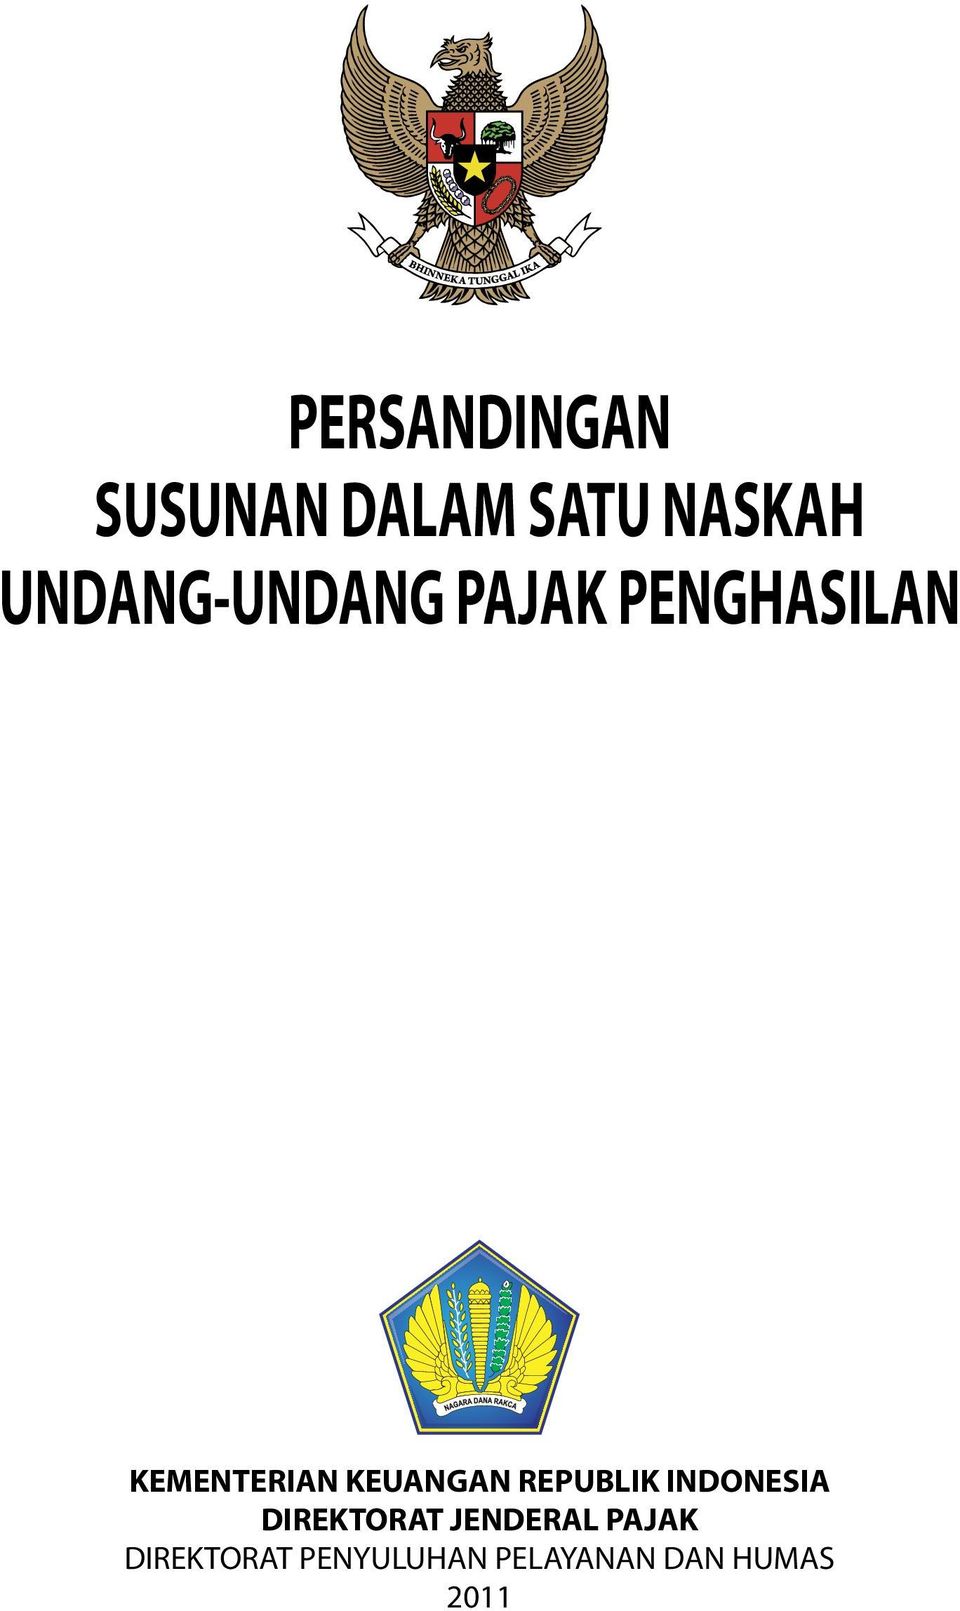 KEUANGAN REPUBLIK INDONESIA DIREKTORAT